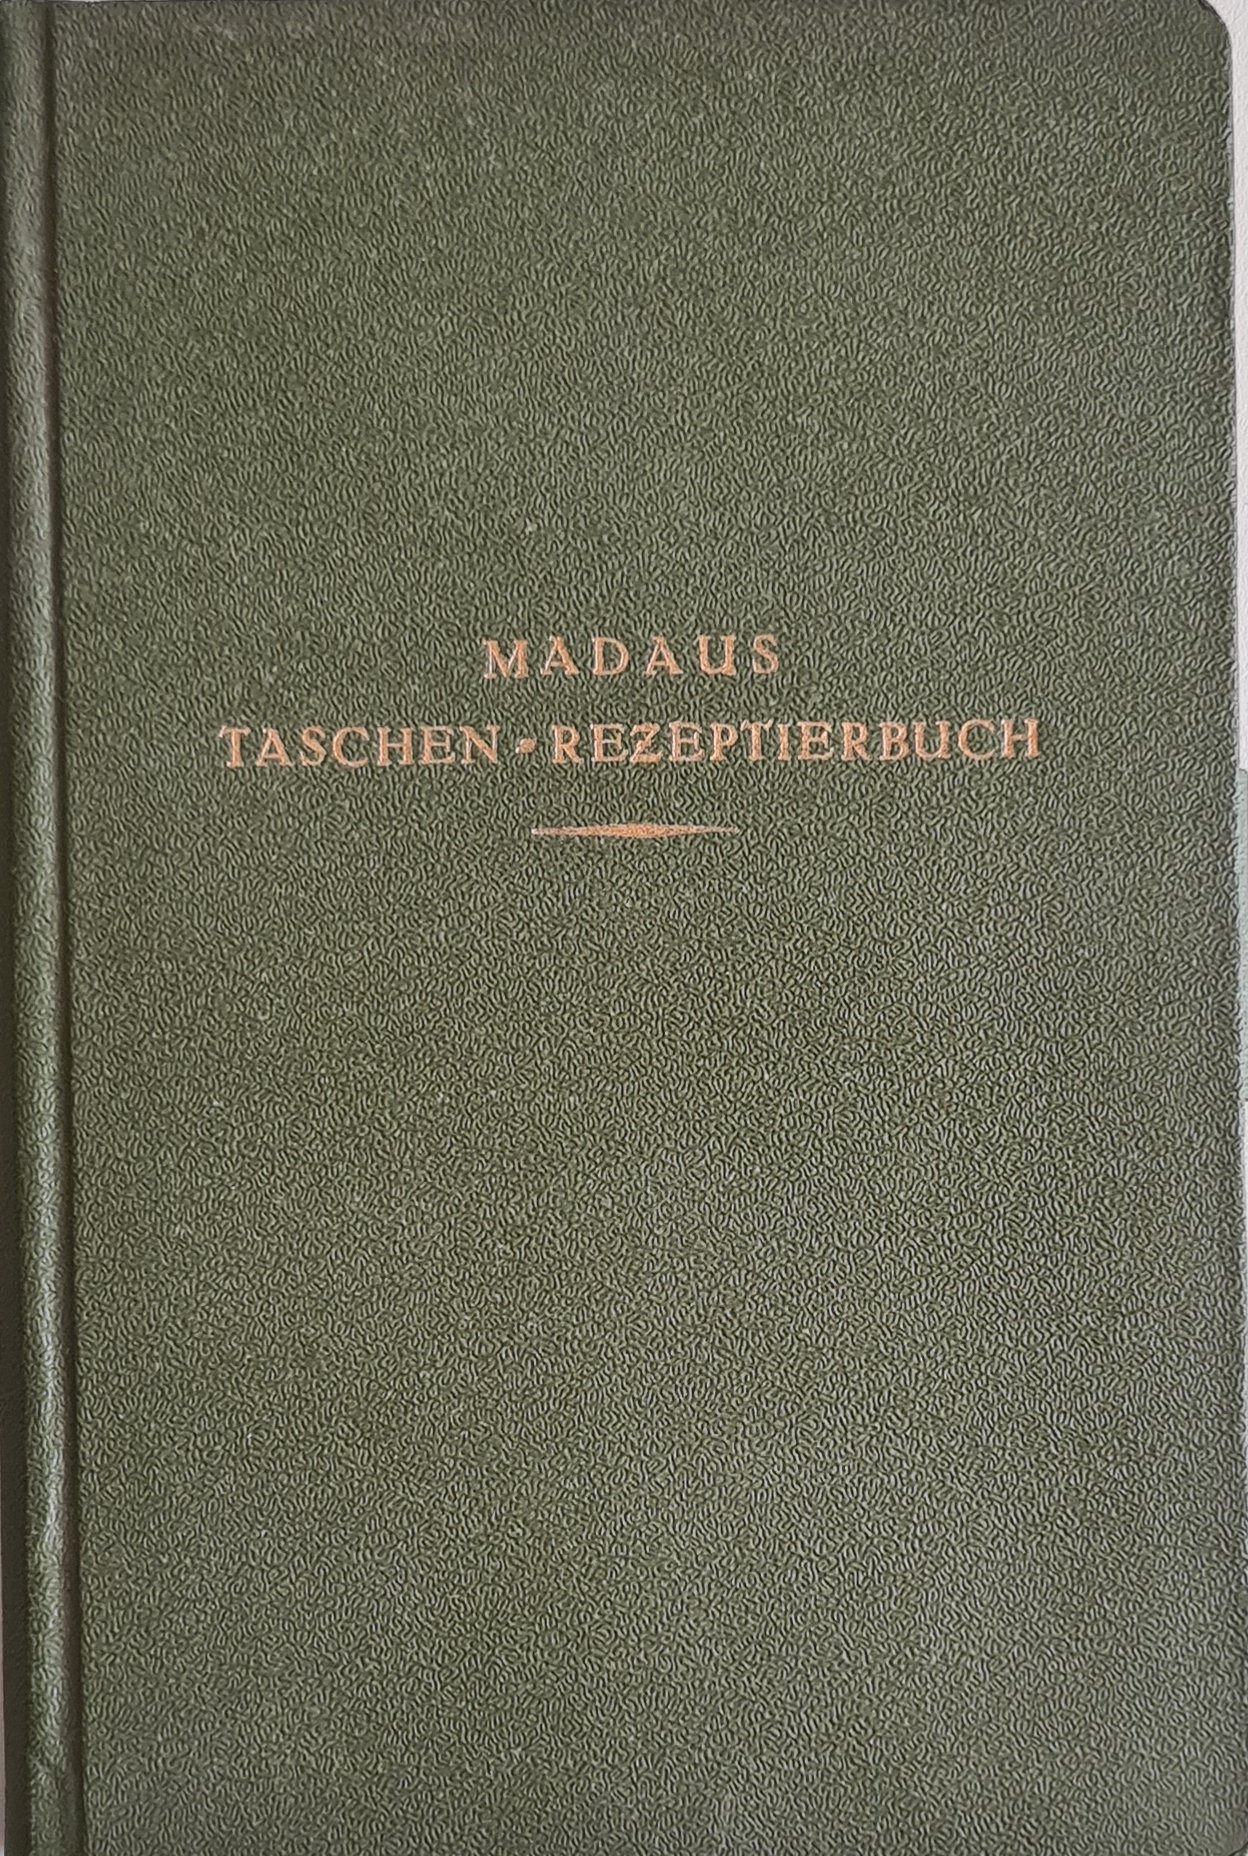 Madaus Taschen-Rezeptierbuch (Krankenhausmuseum Bielefeld e.V. CC BY-NC-SA)